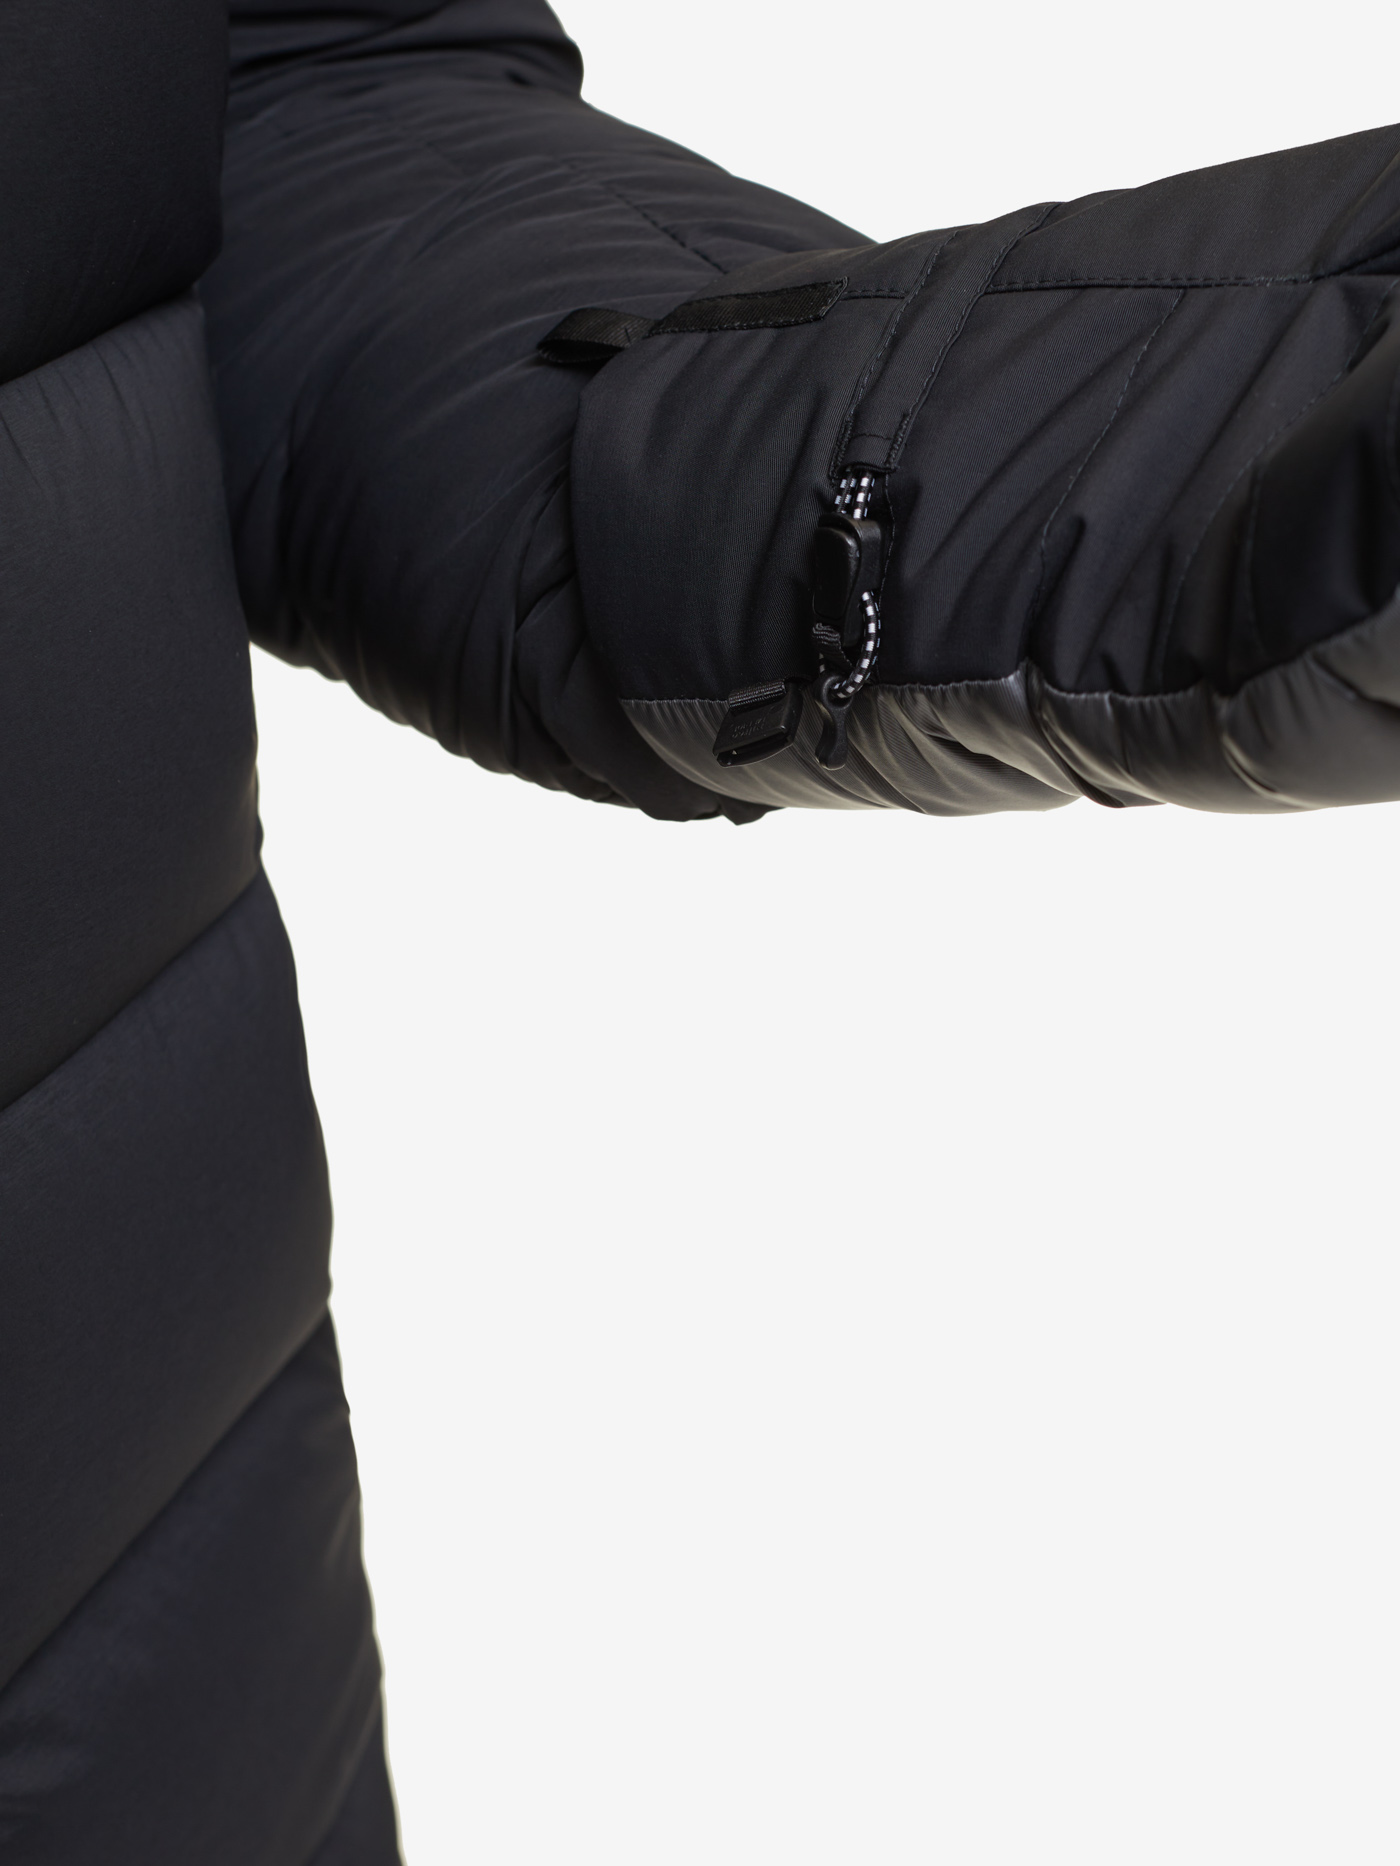 Пуховые рукавицы BASK, размер M, цвет колониальный синий 19H57-9378-M D-tube mitts - фото 15